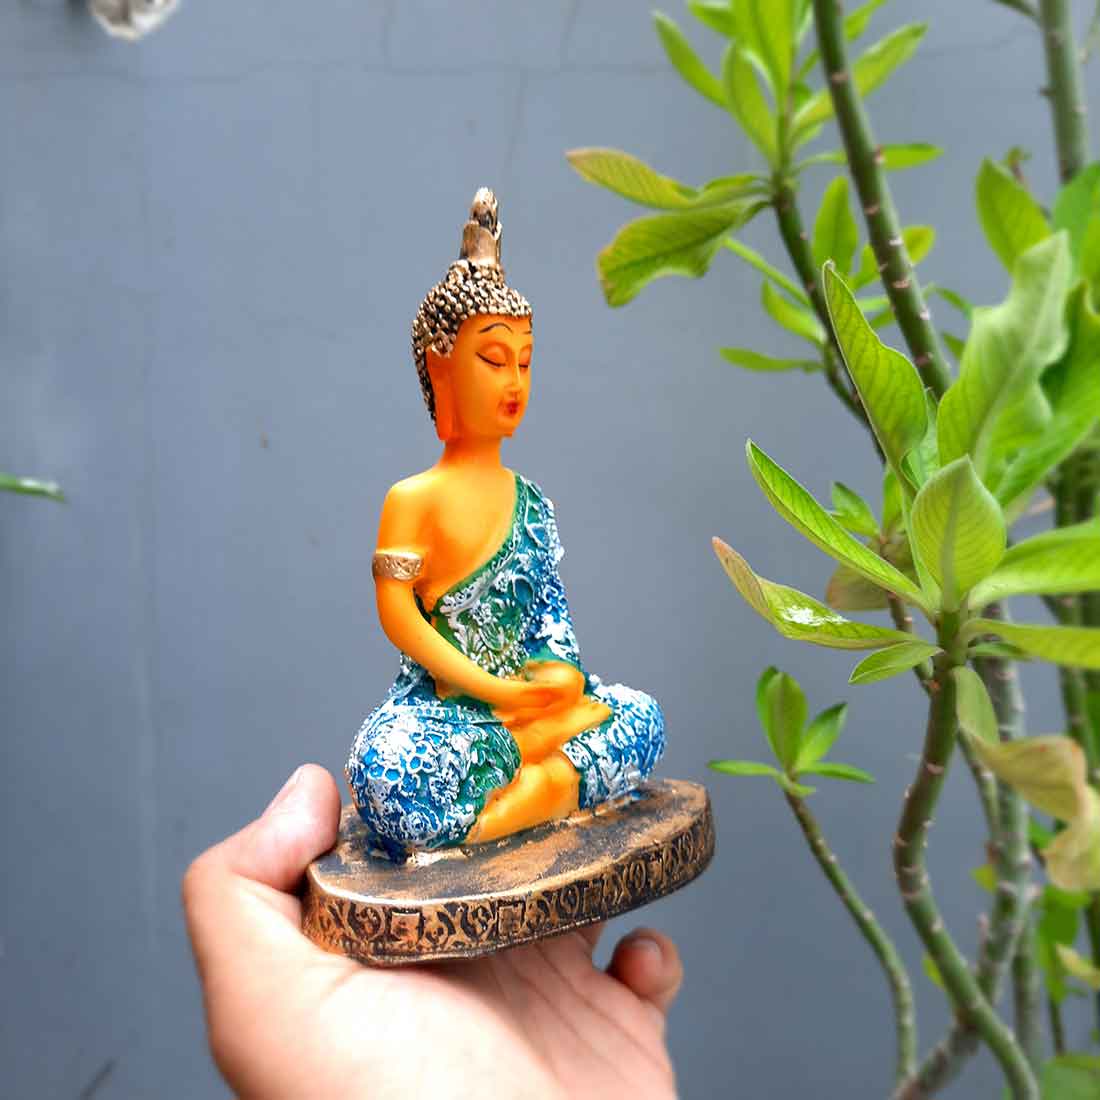 Buddha Showpiece Home Decor -for Home Decor & Spiritual Living - 7 Inch - ApkaMart